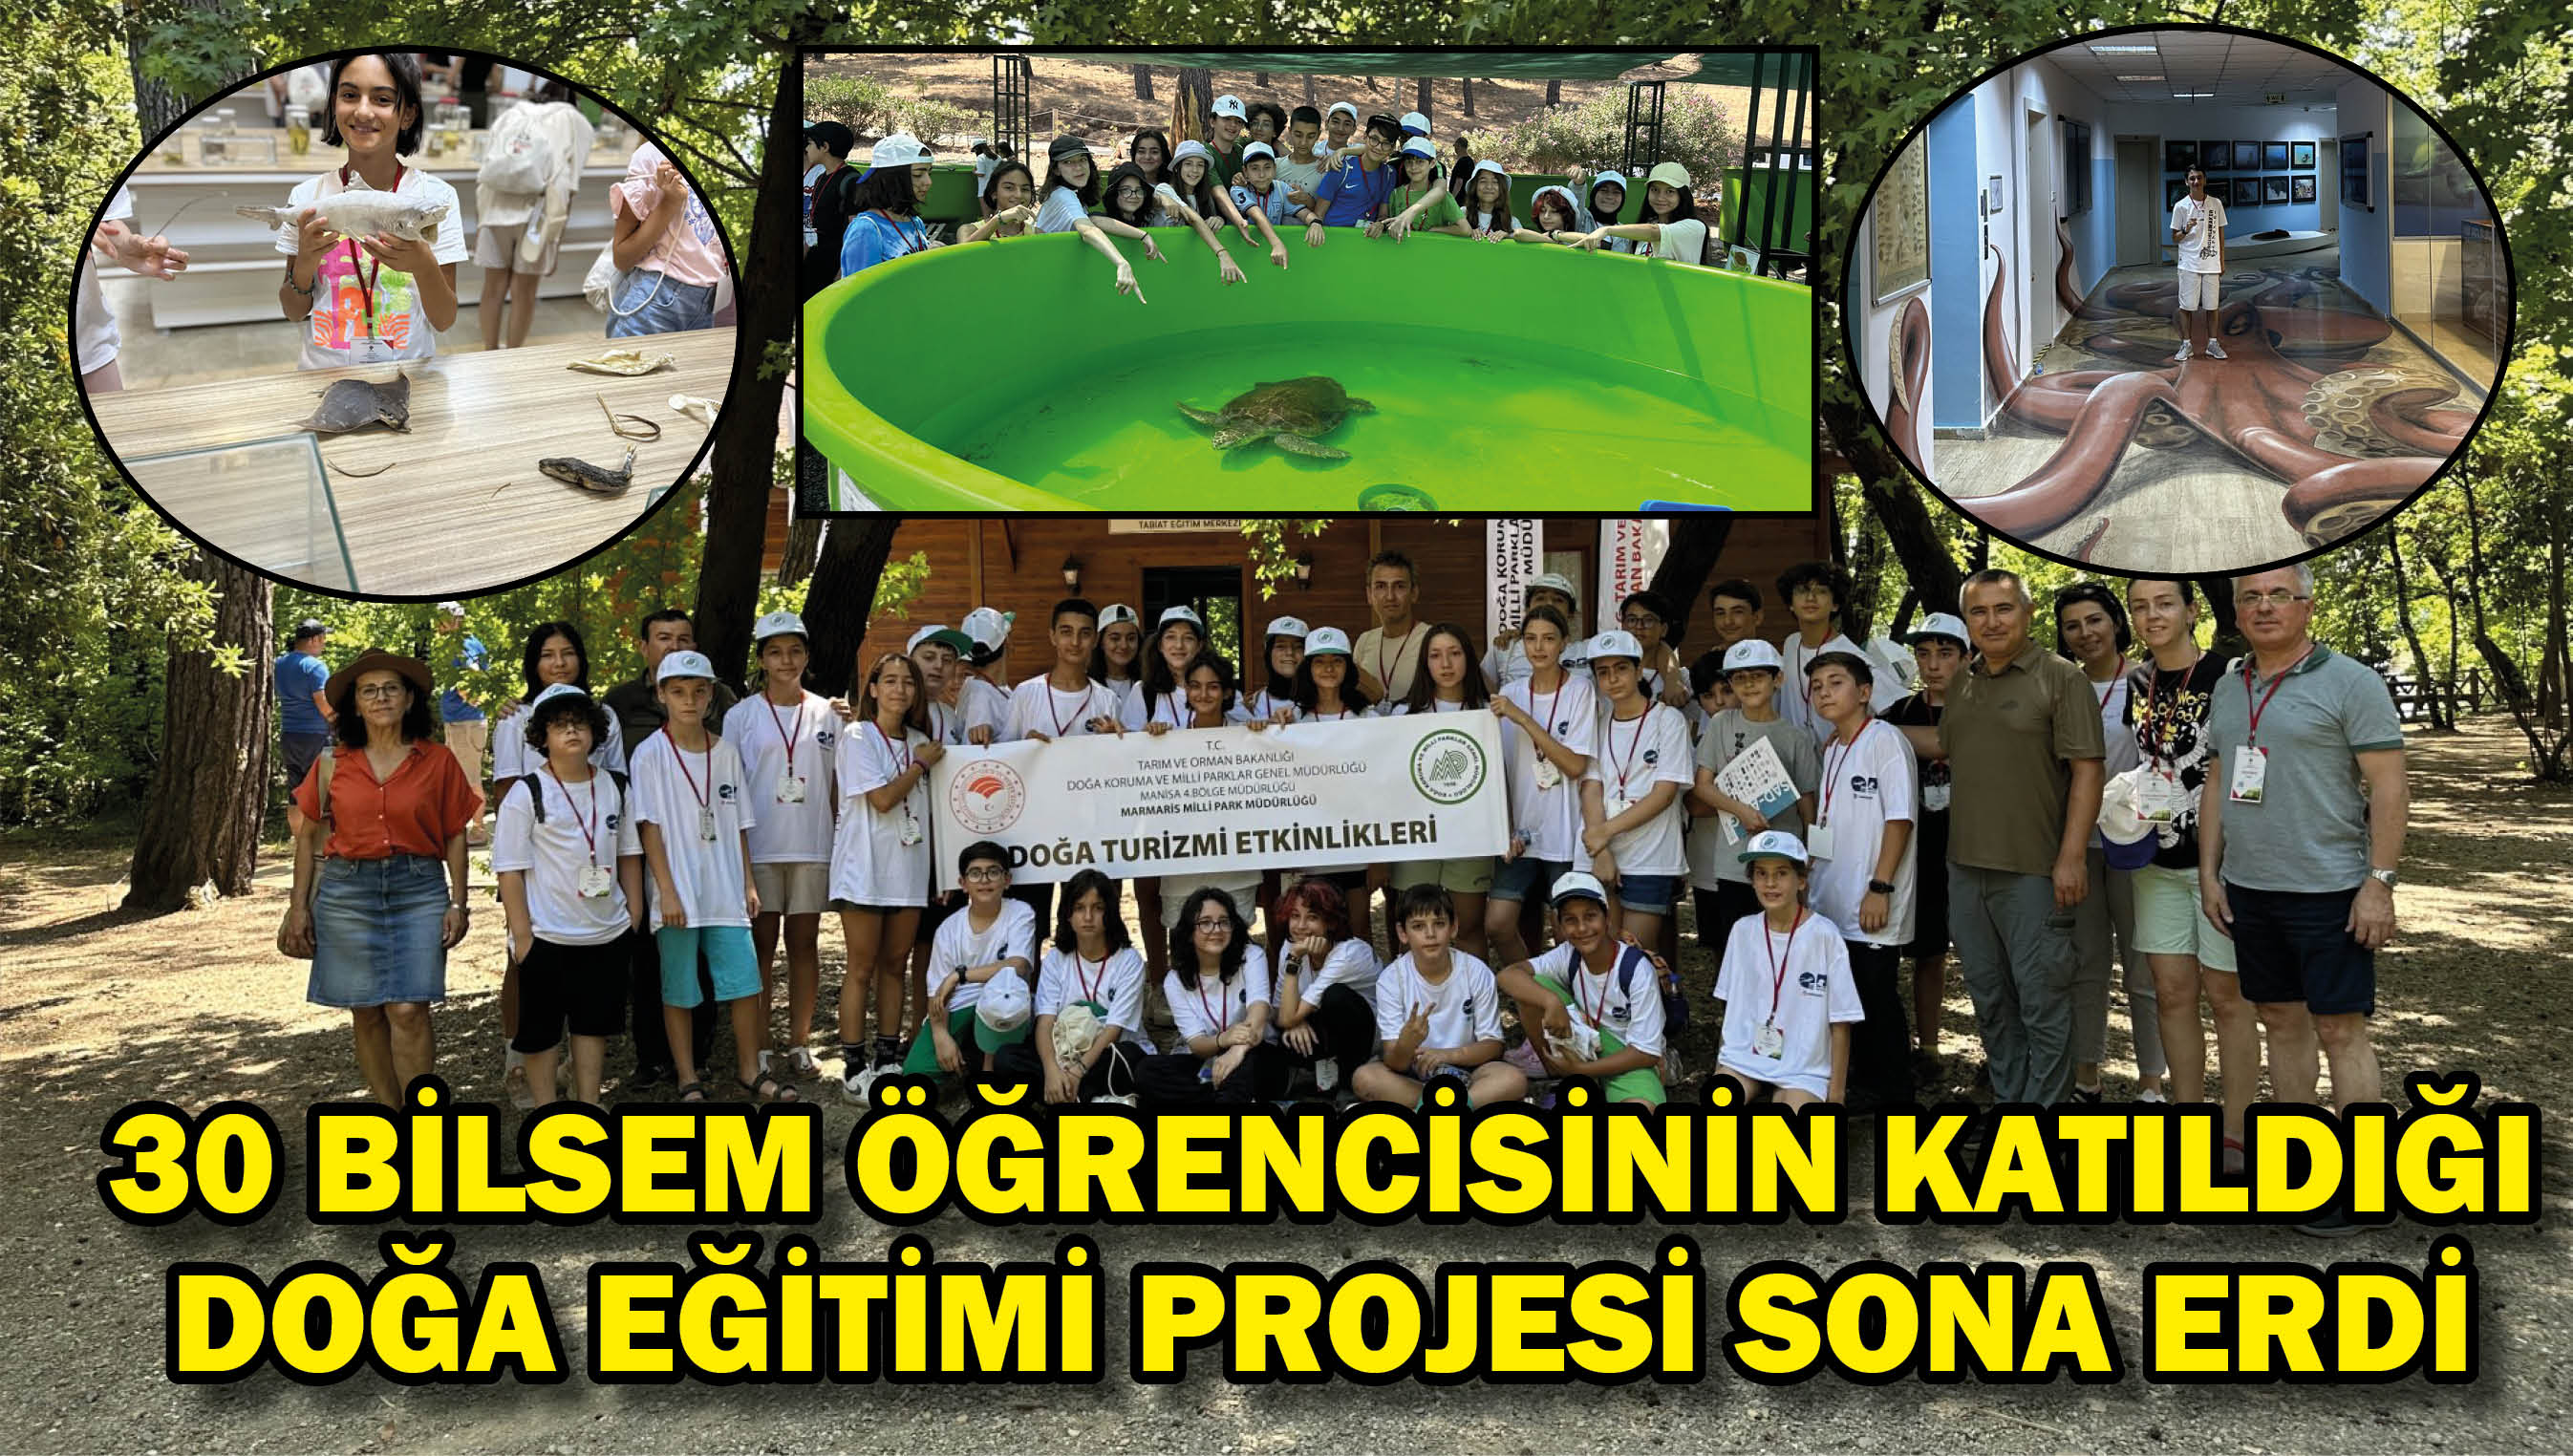 30 BİLSEM öğrencisinin katıldığı Doğa Eğitimi projesi sona erdi